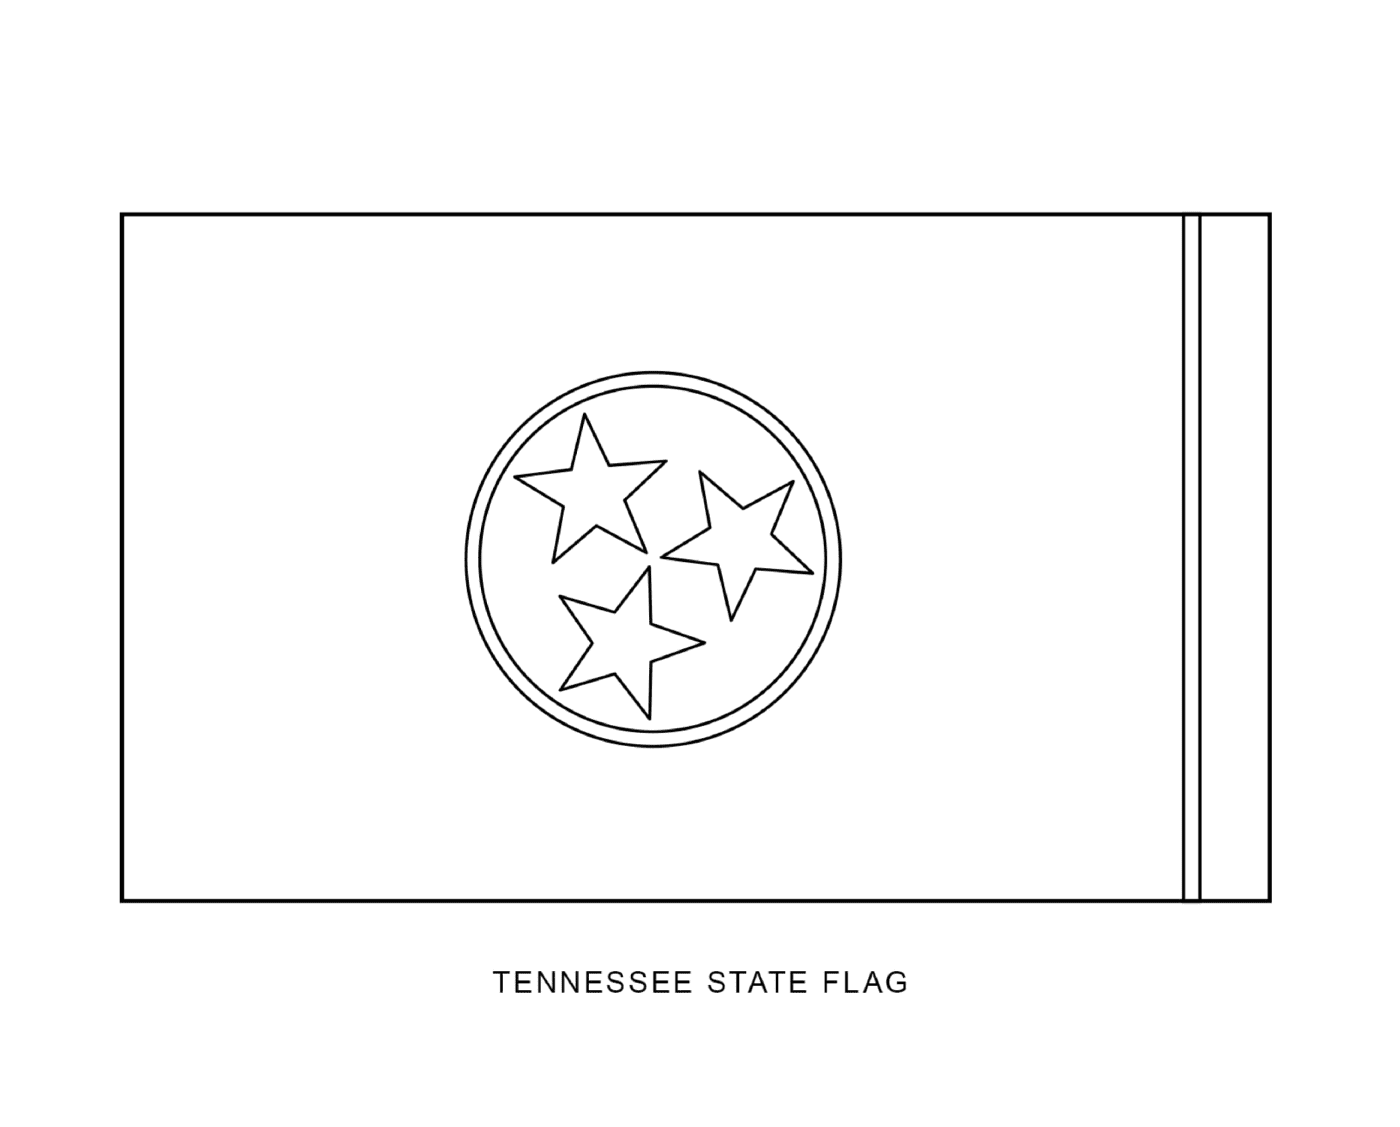  लिथुआनिया की सरकार का ध्वज जिसके तीन तारों के साथ तीन तारों के साथ किया गया है 